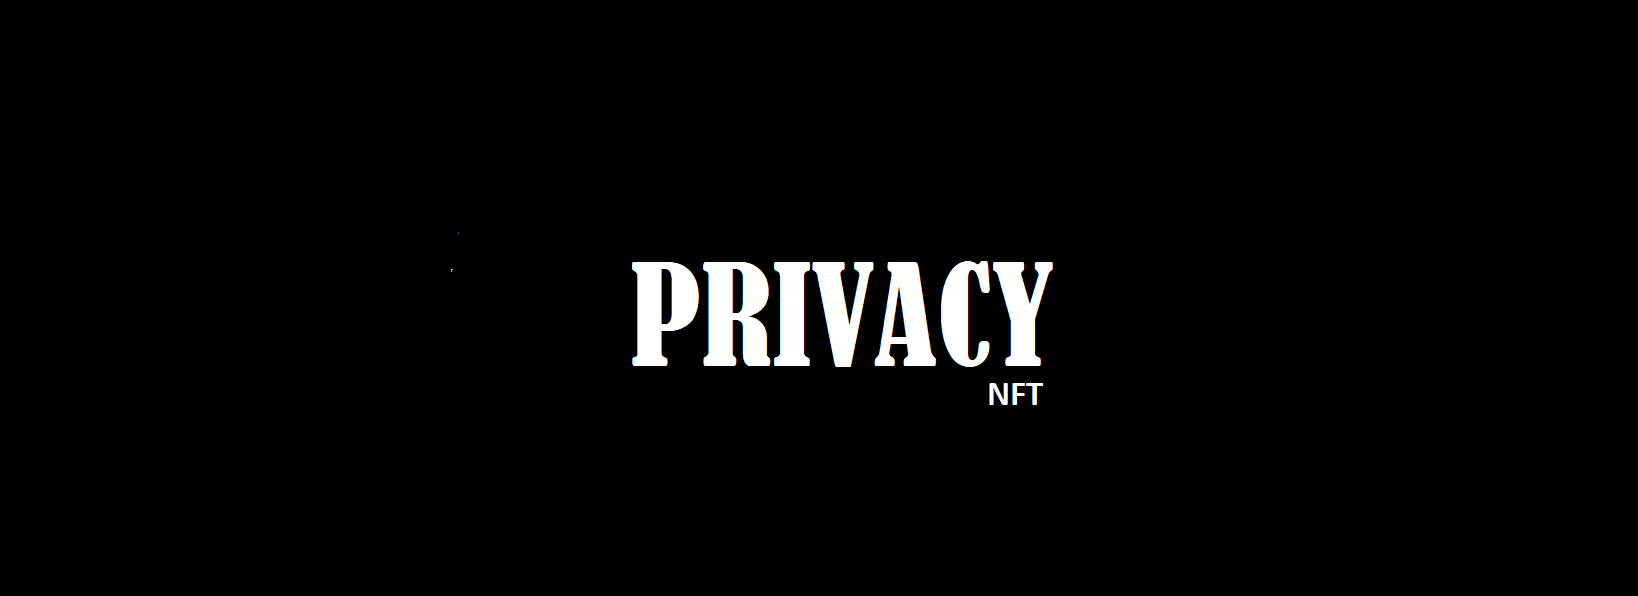 PrivacyNFT bannière